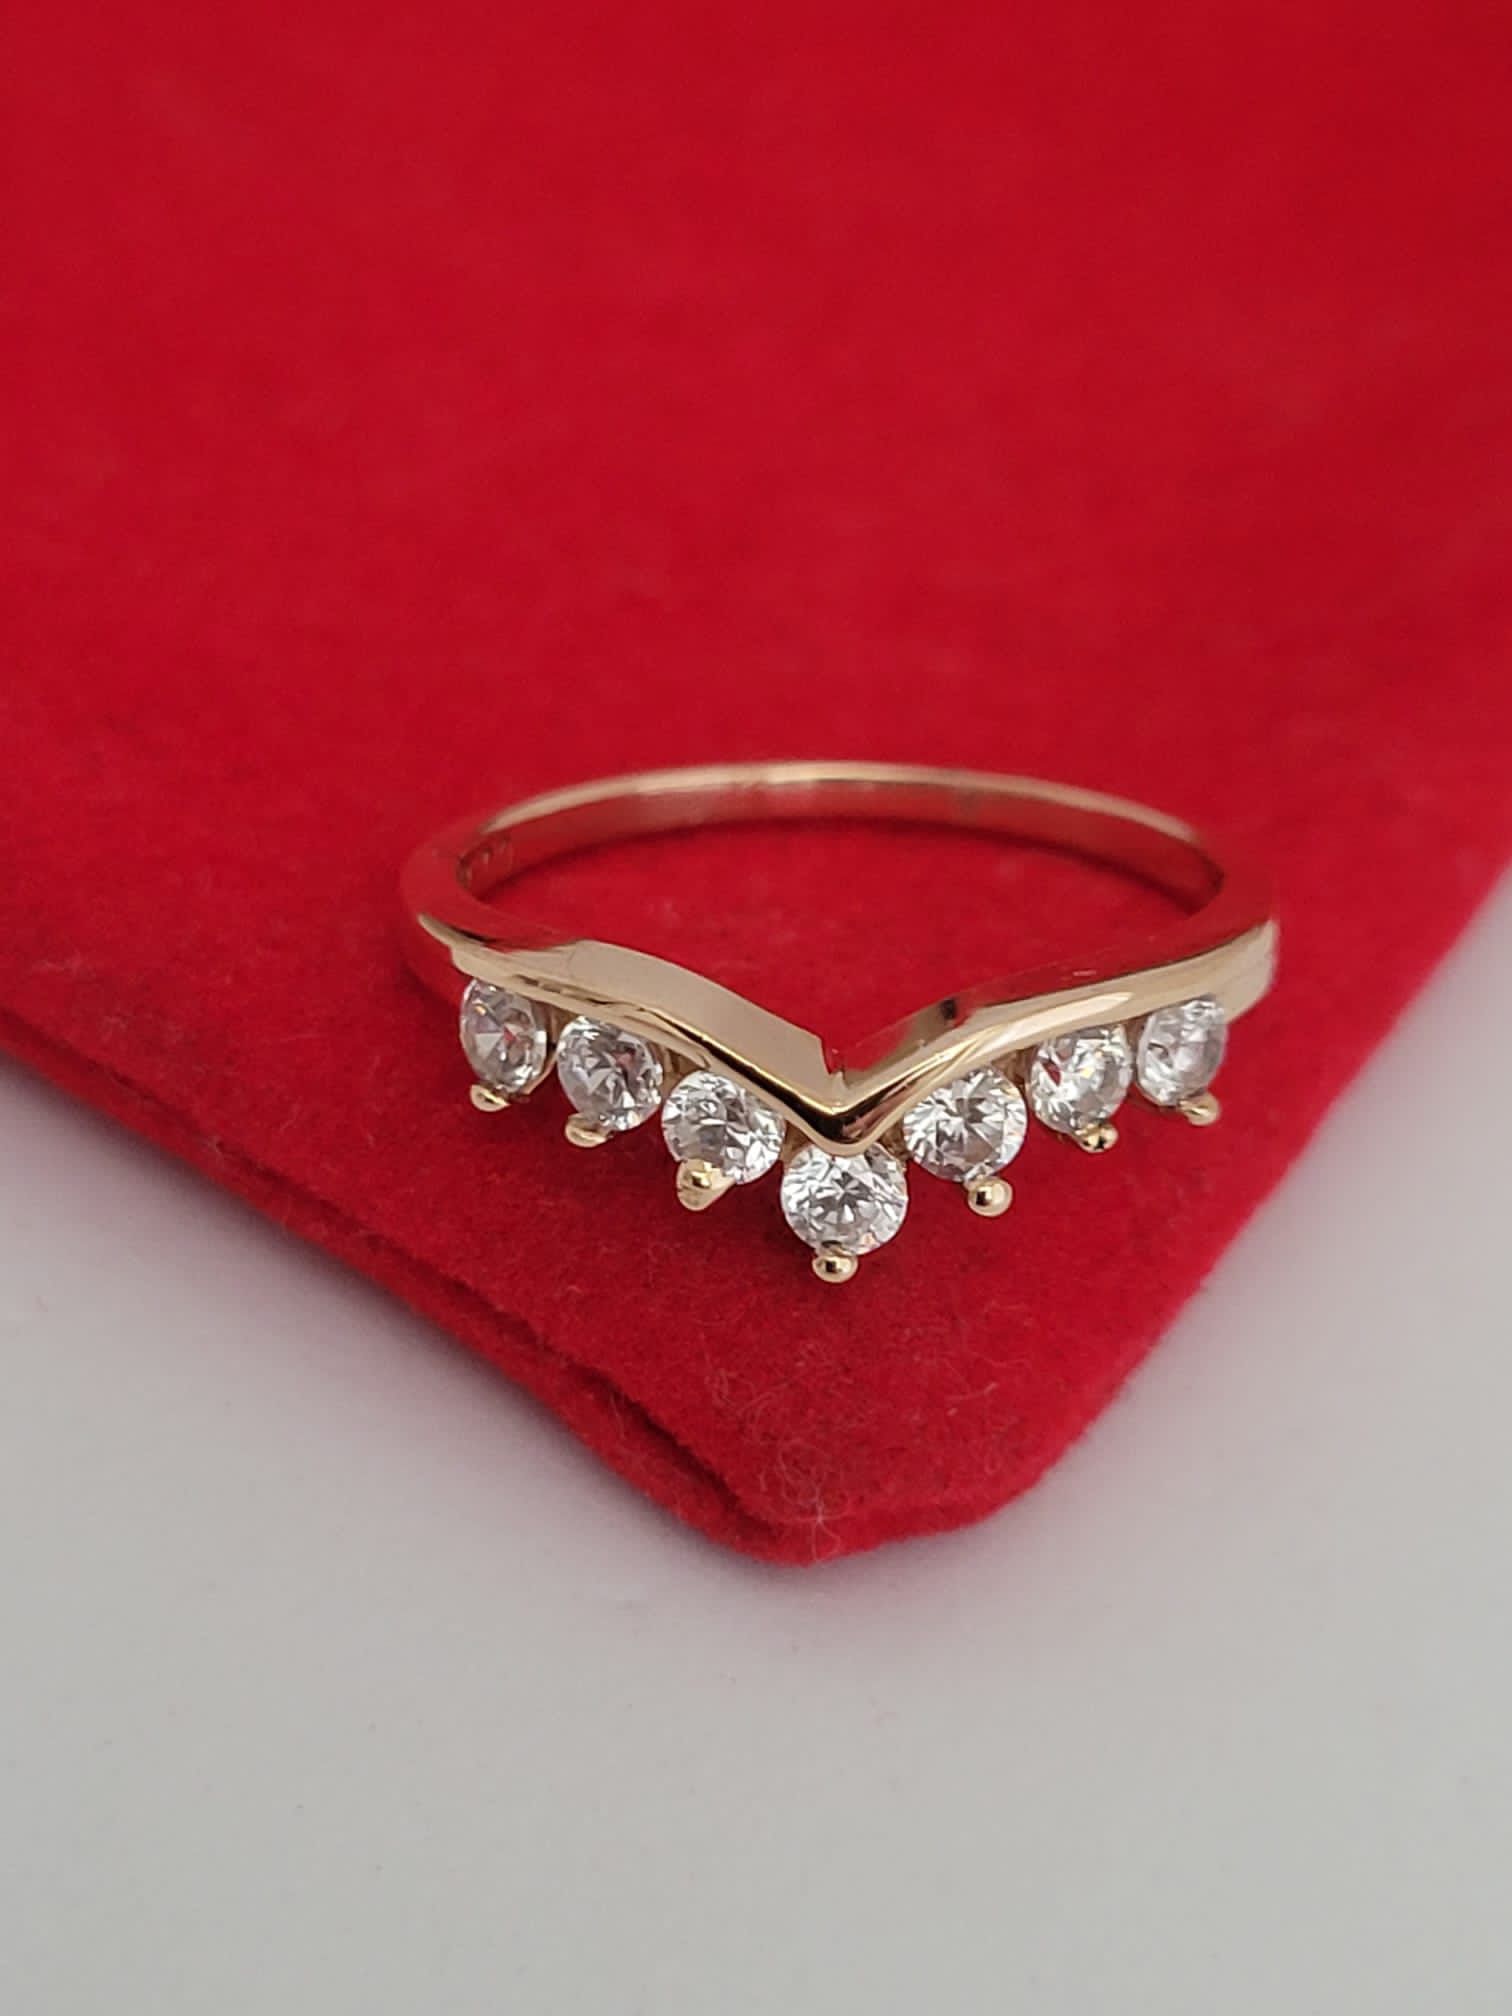 ❤️14k Size 6 Pretty Yellow Gold Cz Tiara Design Ring!/Anillo de oro en forma de tiara y CZ!👌🥰🌻post Tags: Anillo De Oro